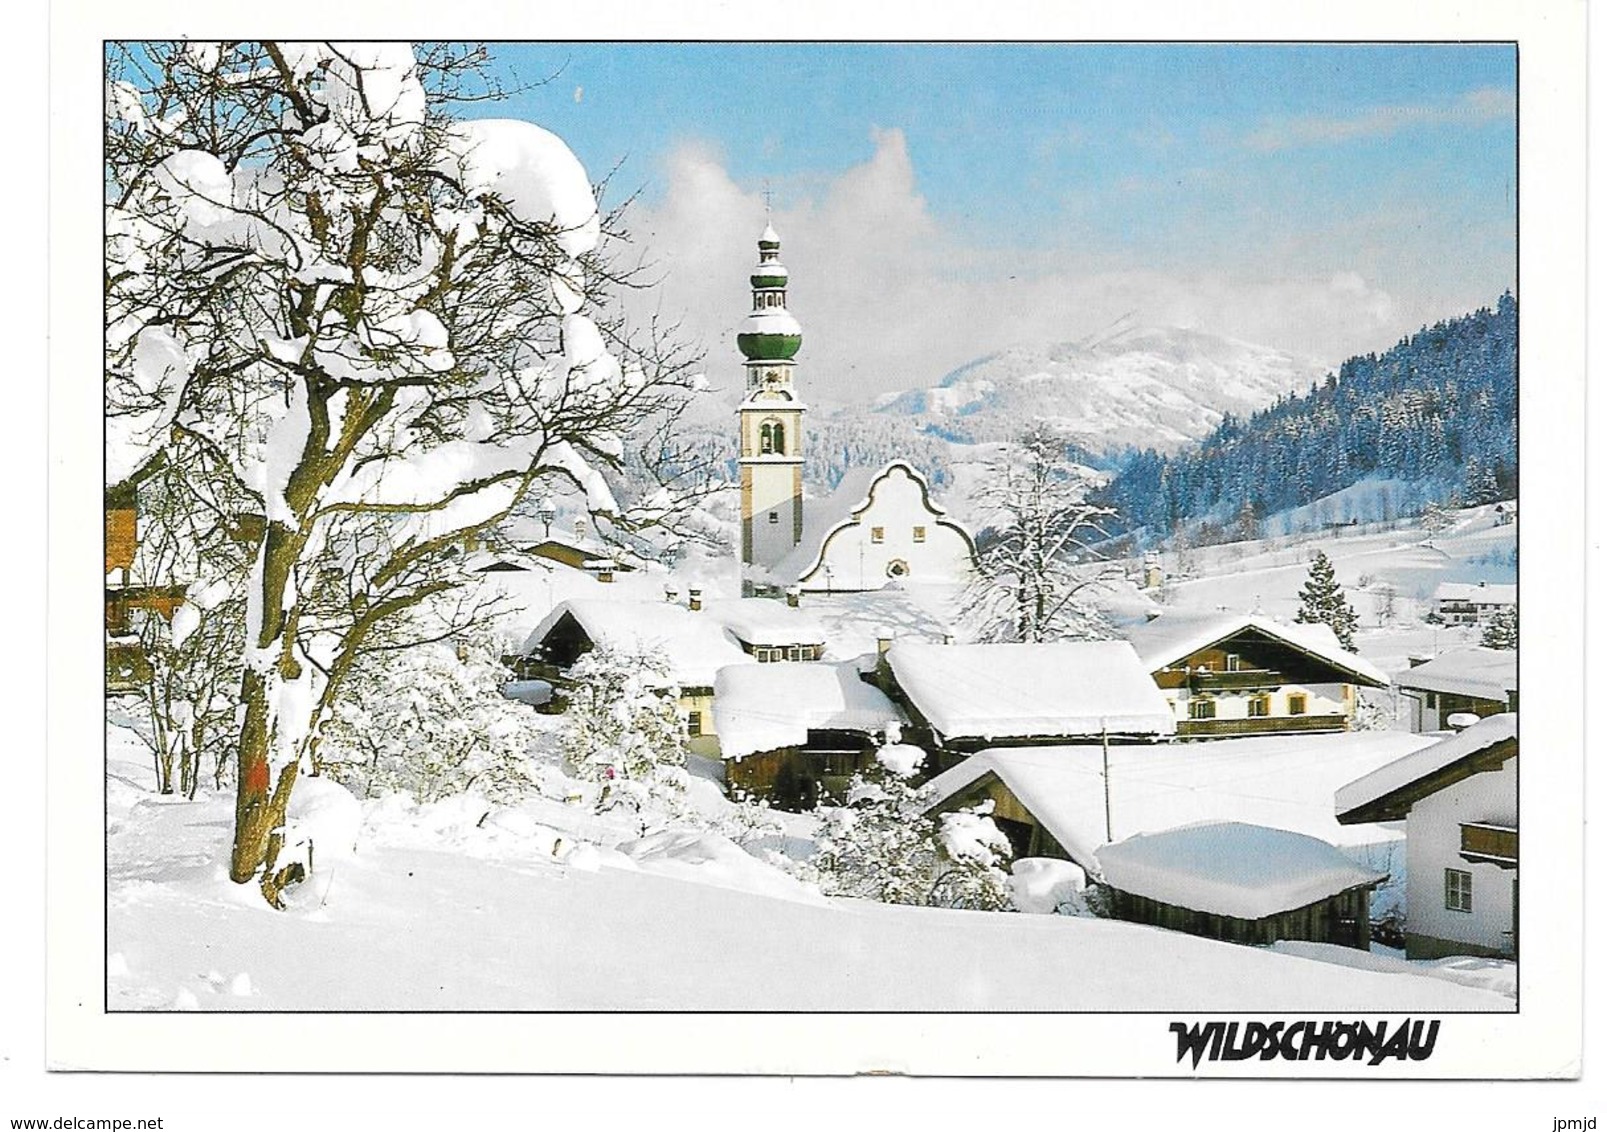 OBERAU - Hochtal Wildschönau, Tirol - Foto Sandbichler, Oberau Nr. S 8313 - 1997 - Wildschönau